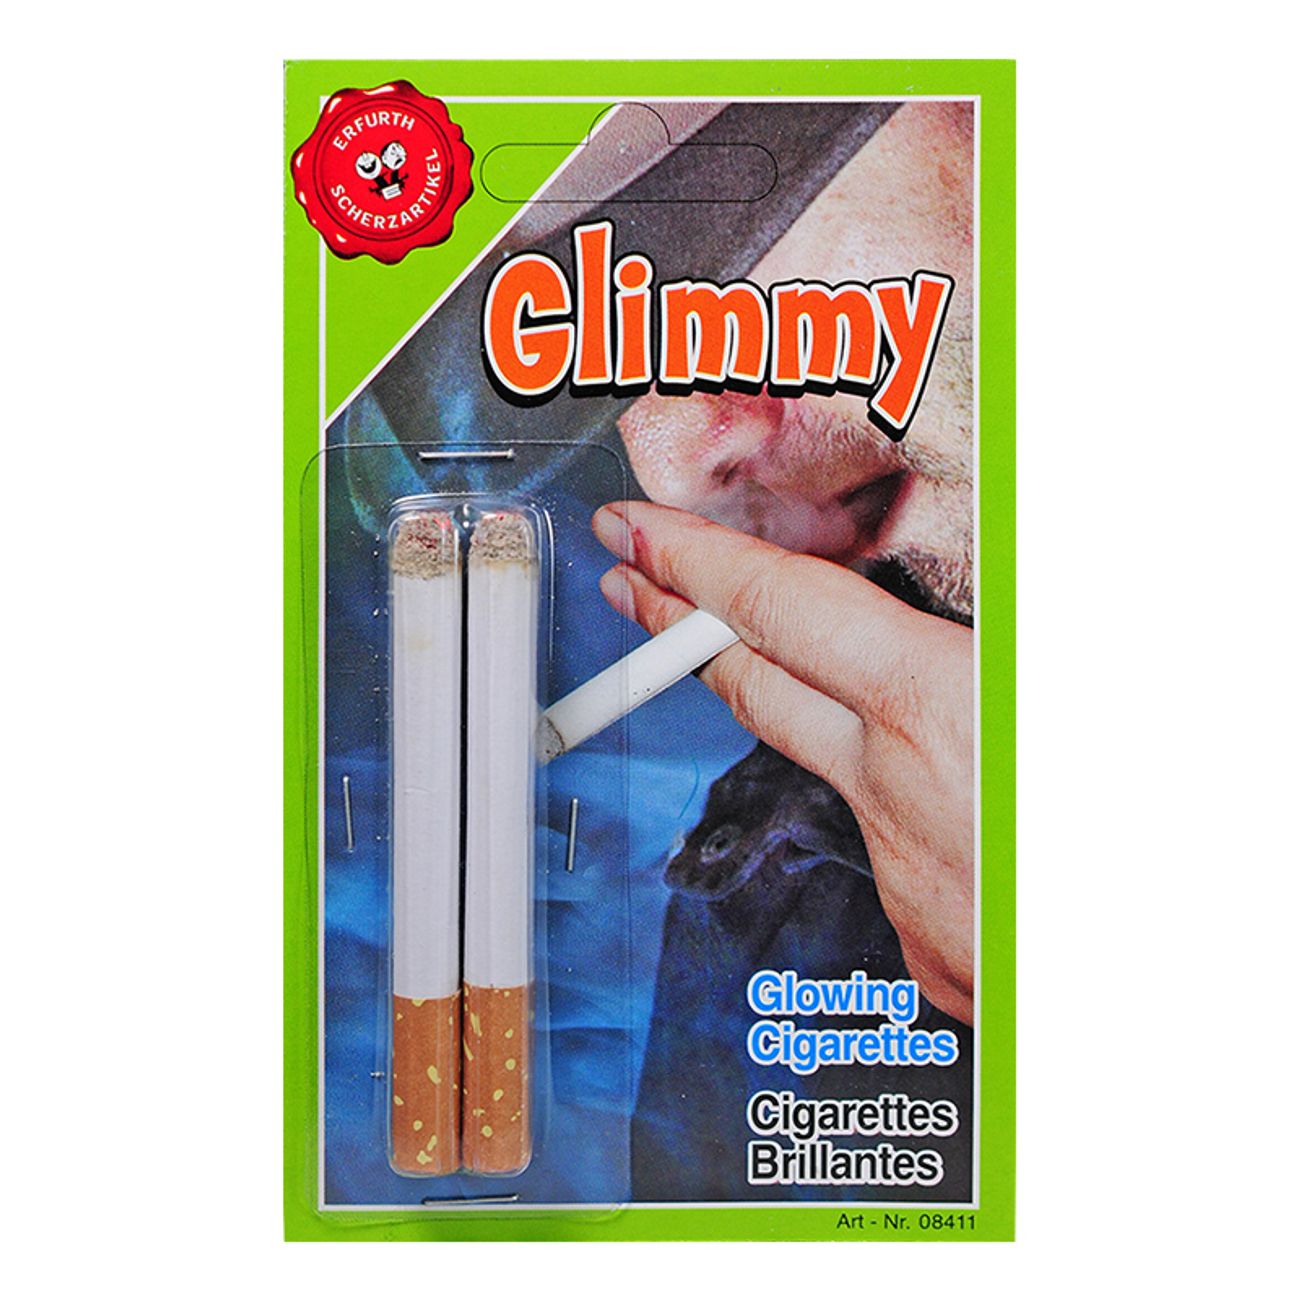 fejkcigaretter-med-glod-80111-1